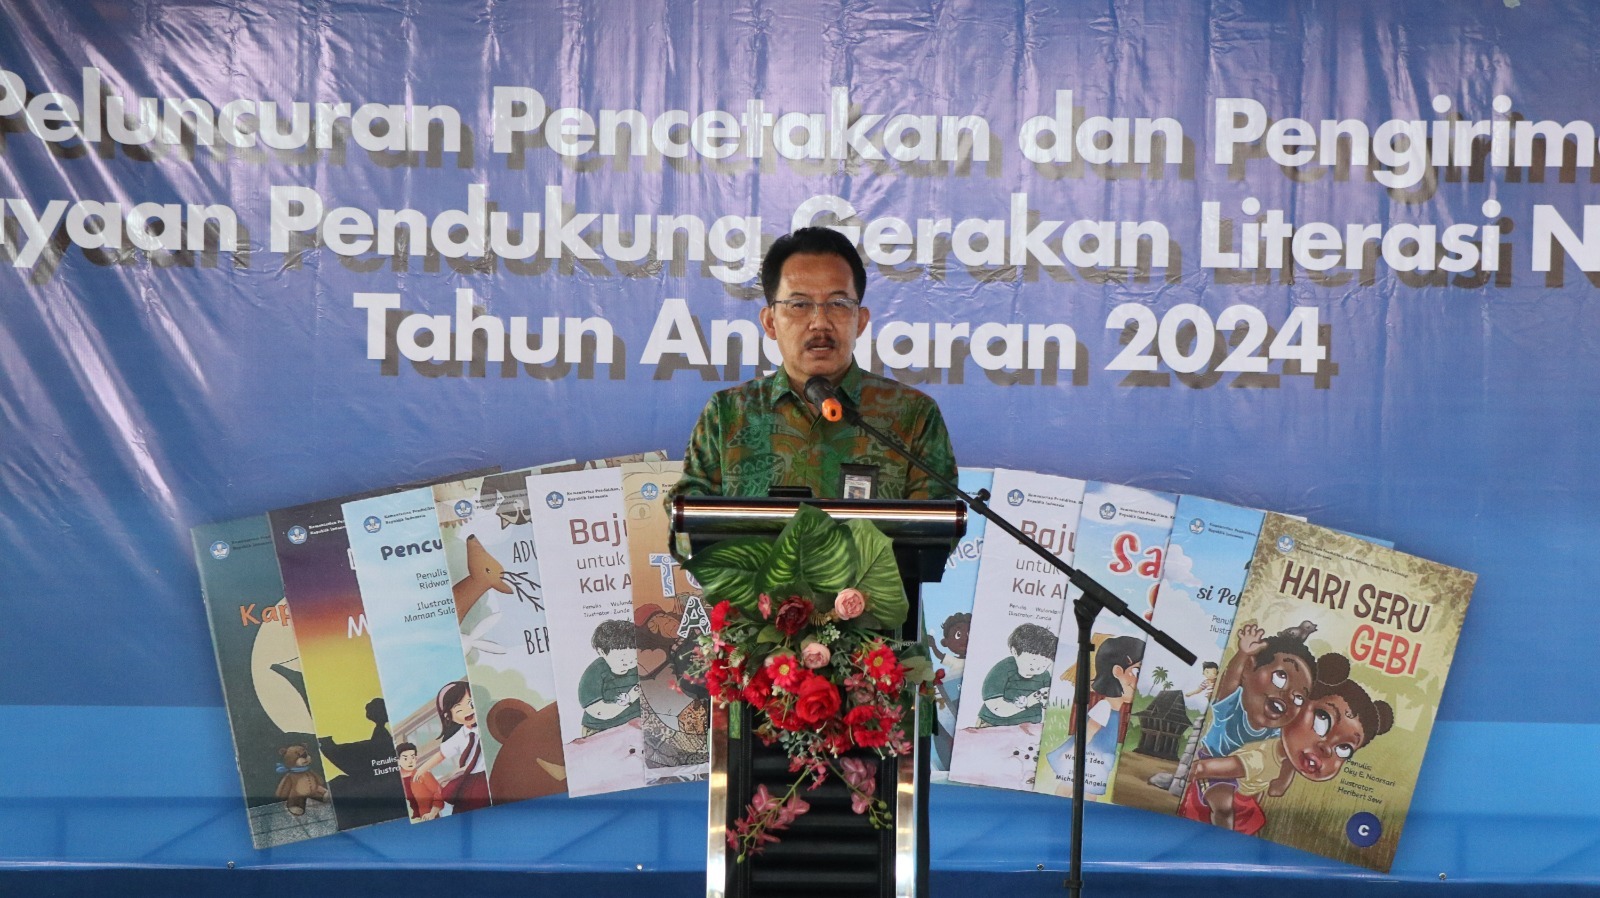 Lebih 4 Juta Eksemplar Buku Terbitan Kemendikbudristek Didistribusikan ke Sekolah di Wilayah Indonesia